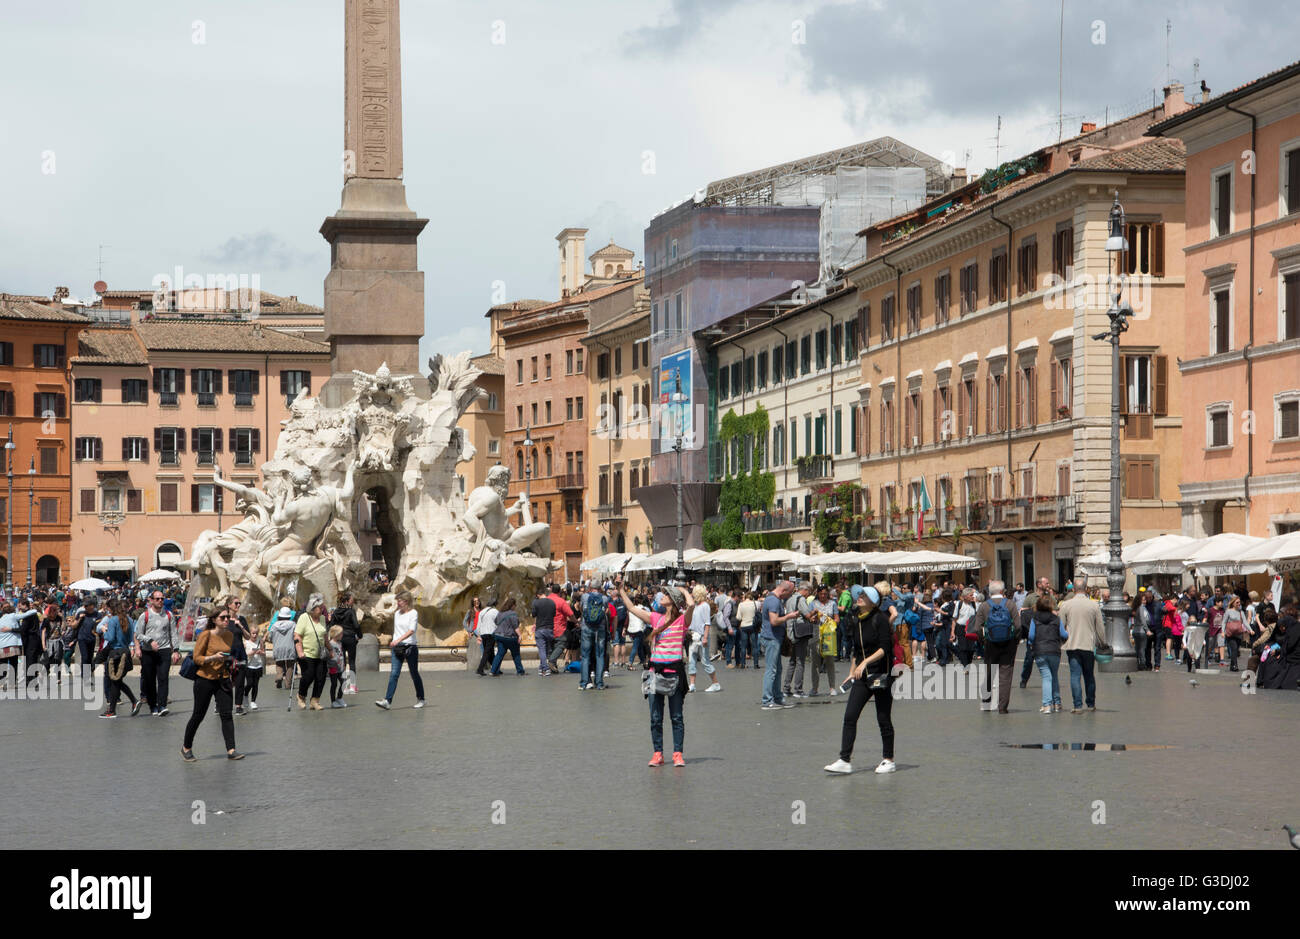 Italien, Rom, Piazza Navona, Vierströmebrunnen (Fontana dei Quattro Fiumi) von Bernini 1649 dans der Mitte des Platzes erbaut. Vie Banque D'Images